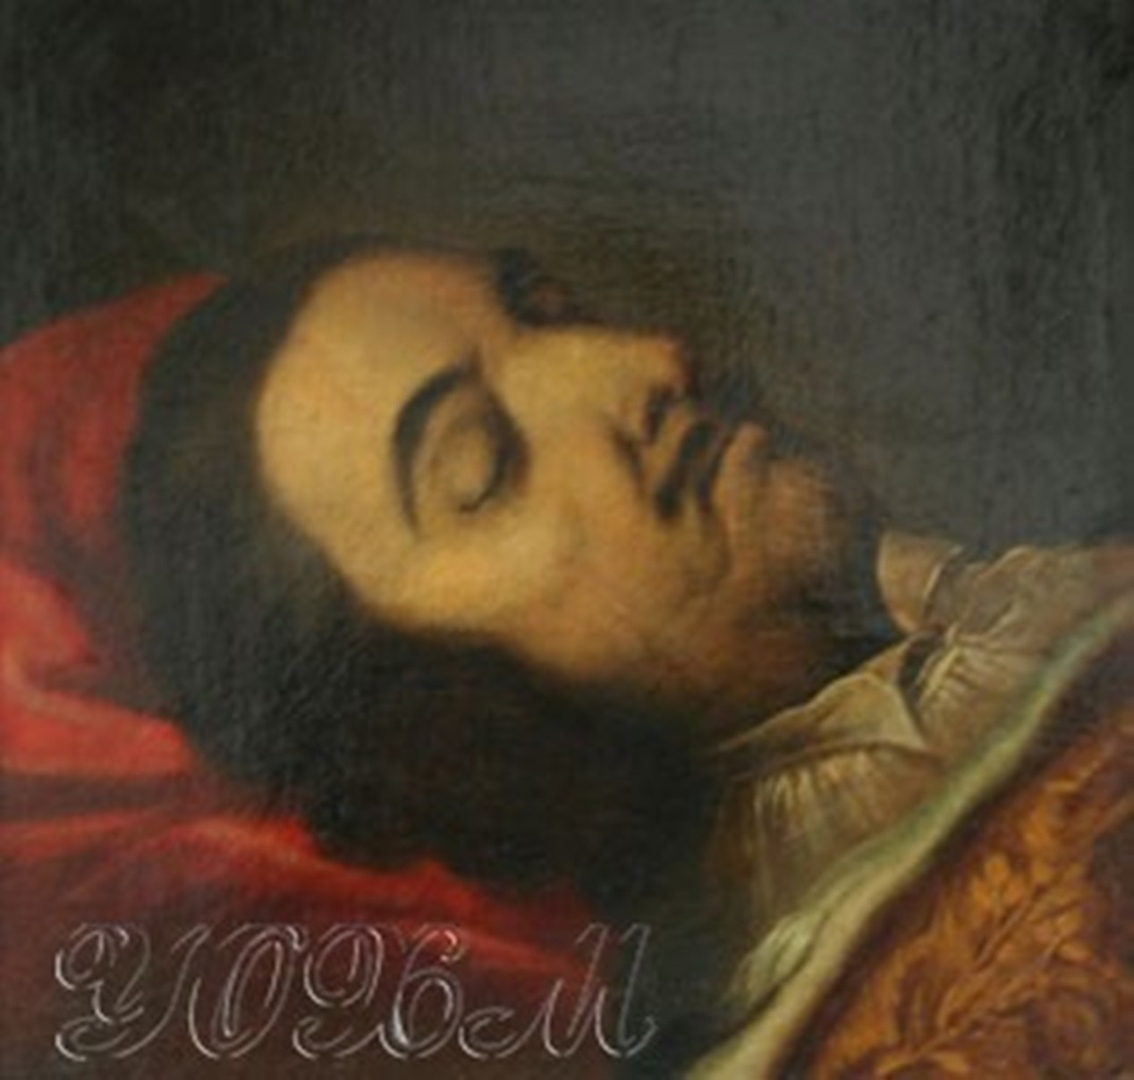 Никитин портрет Петра 1 на смертном одре.